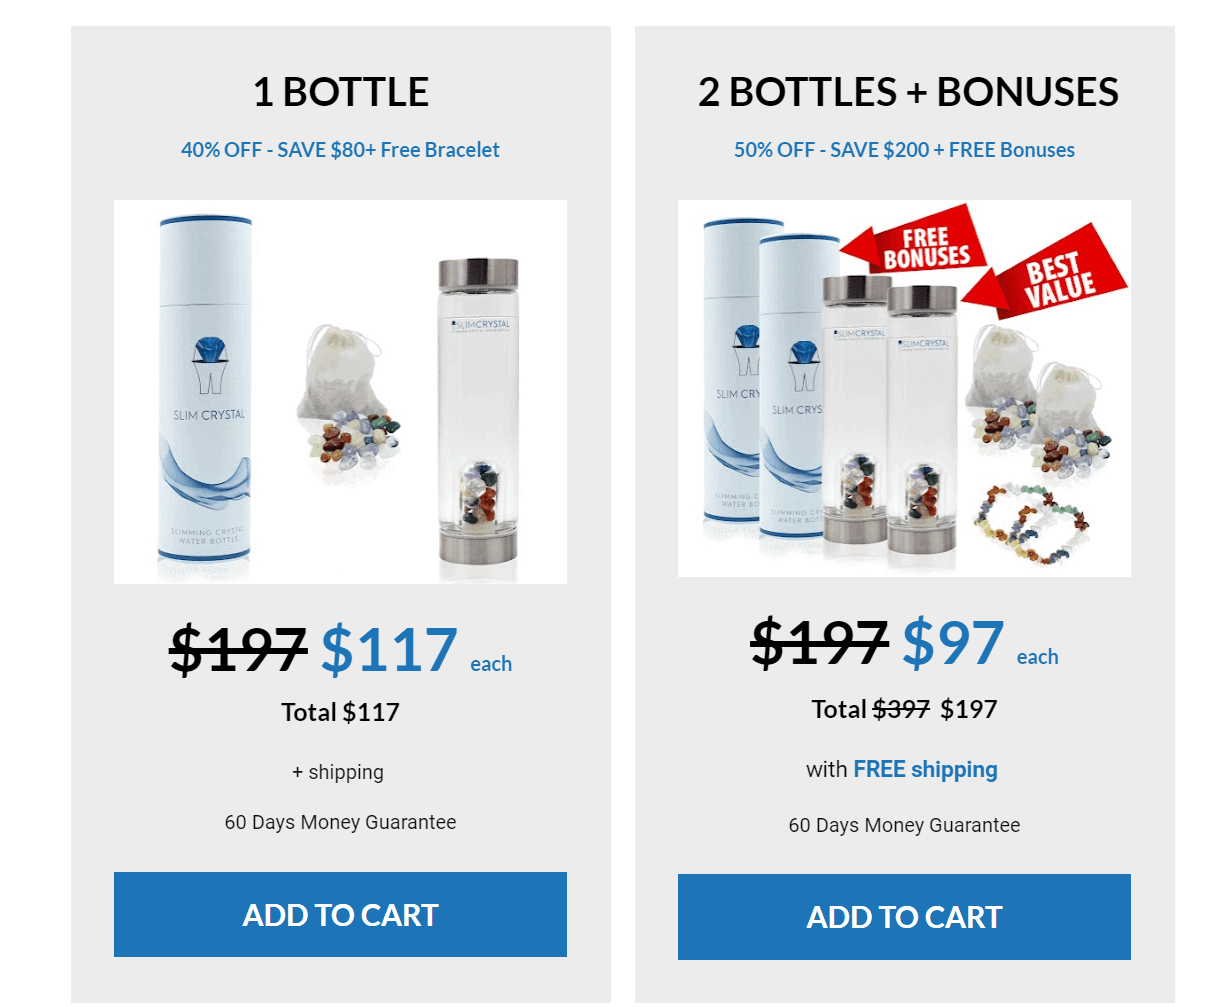 slimcrystal bottle pricing